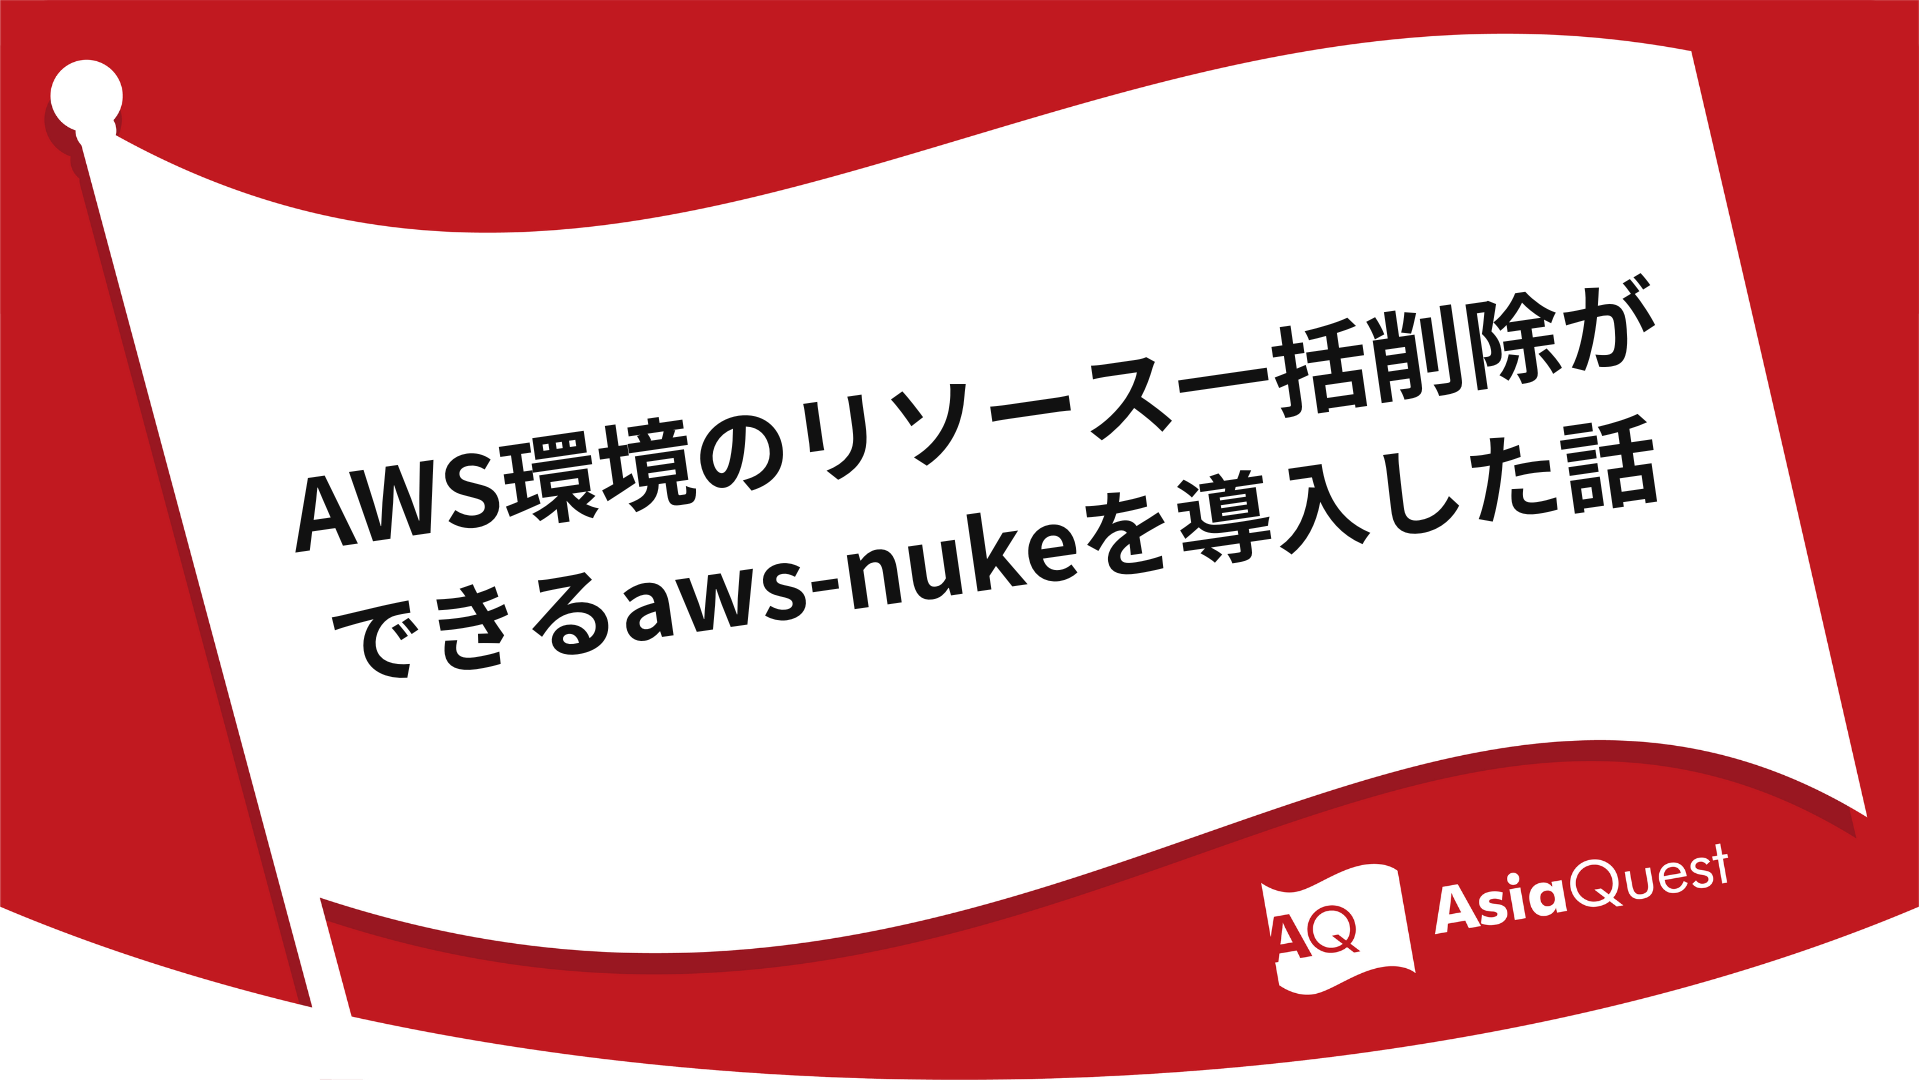 AWS環境のリソース一括削除ができるaws-nukeを導入した話